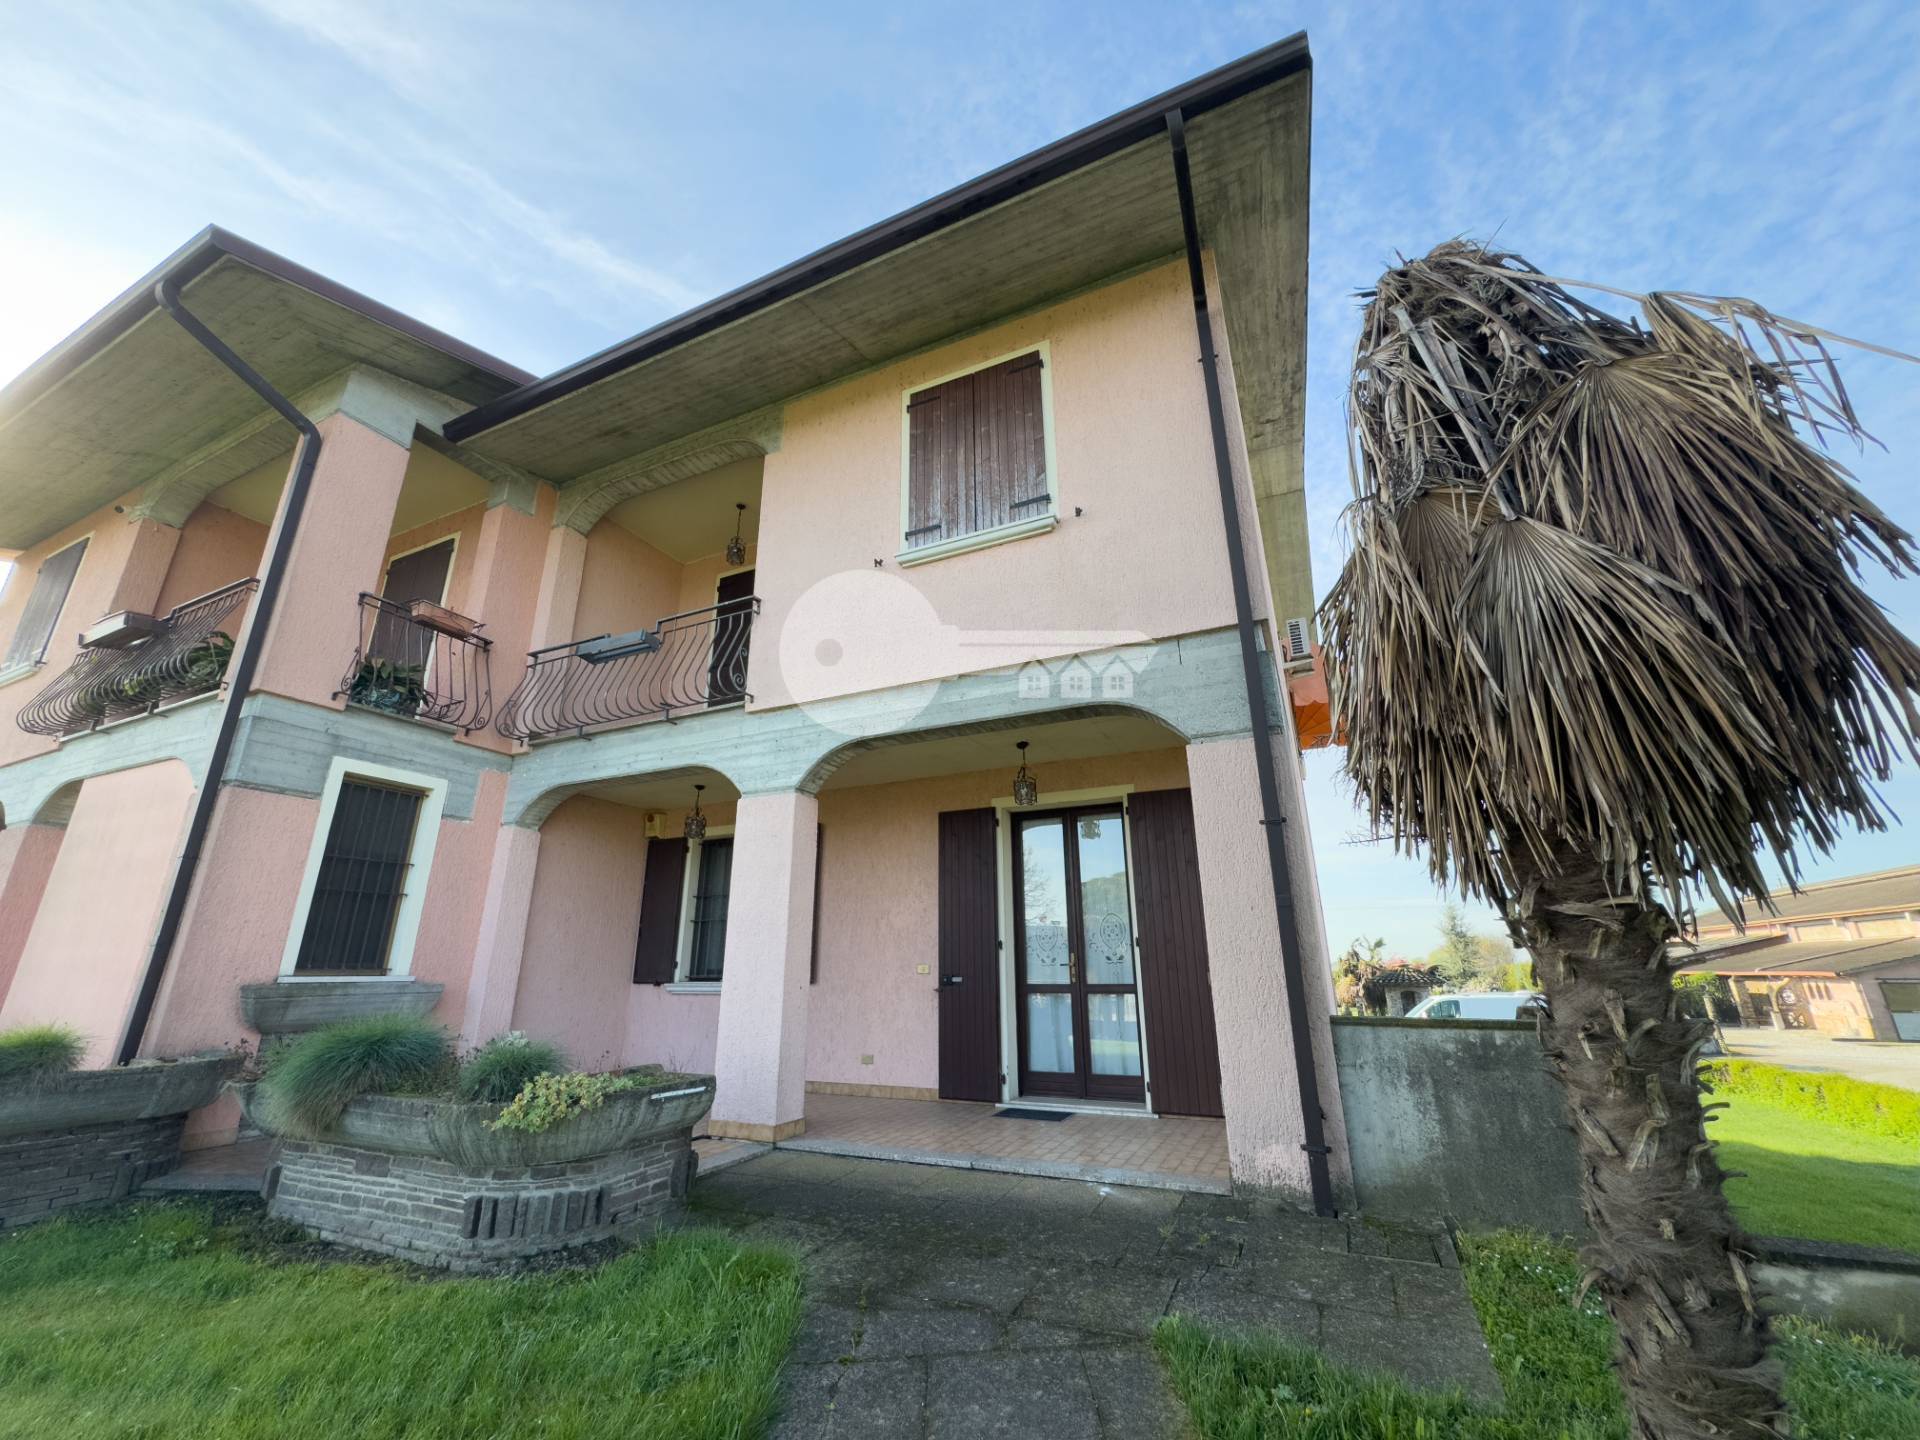 Villa a Schiera in vendita a Gottolengo, 4 locali, Trattative riservate | PortaleAgenzieImmobiliari.it